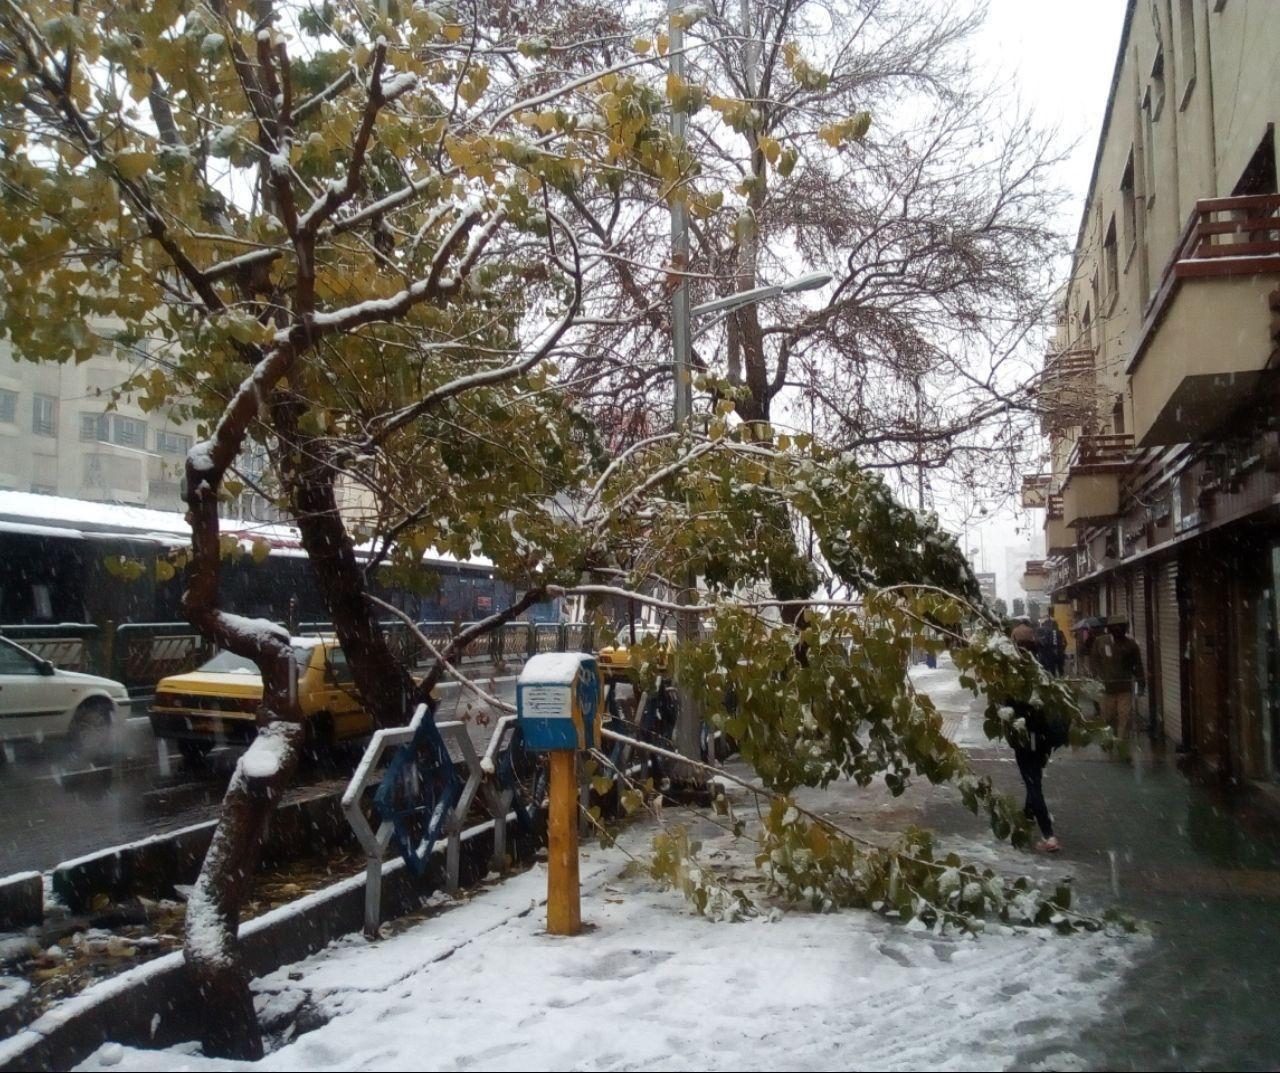 شکستگی شاخه برخی از درختان در تهران و انسداد معابر در پی بارش برف (+عکس)